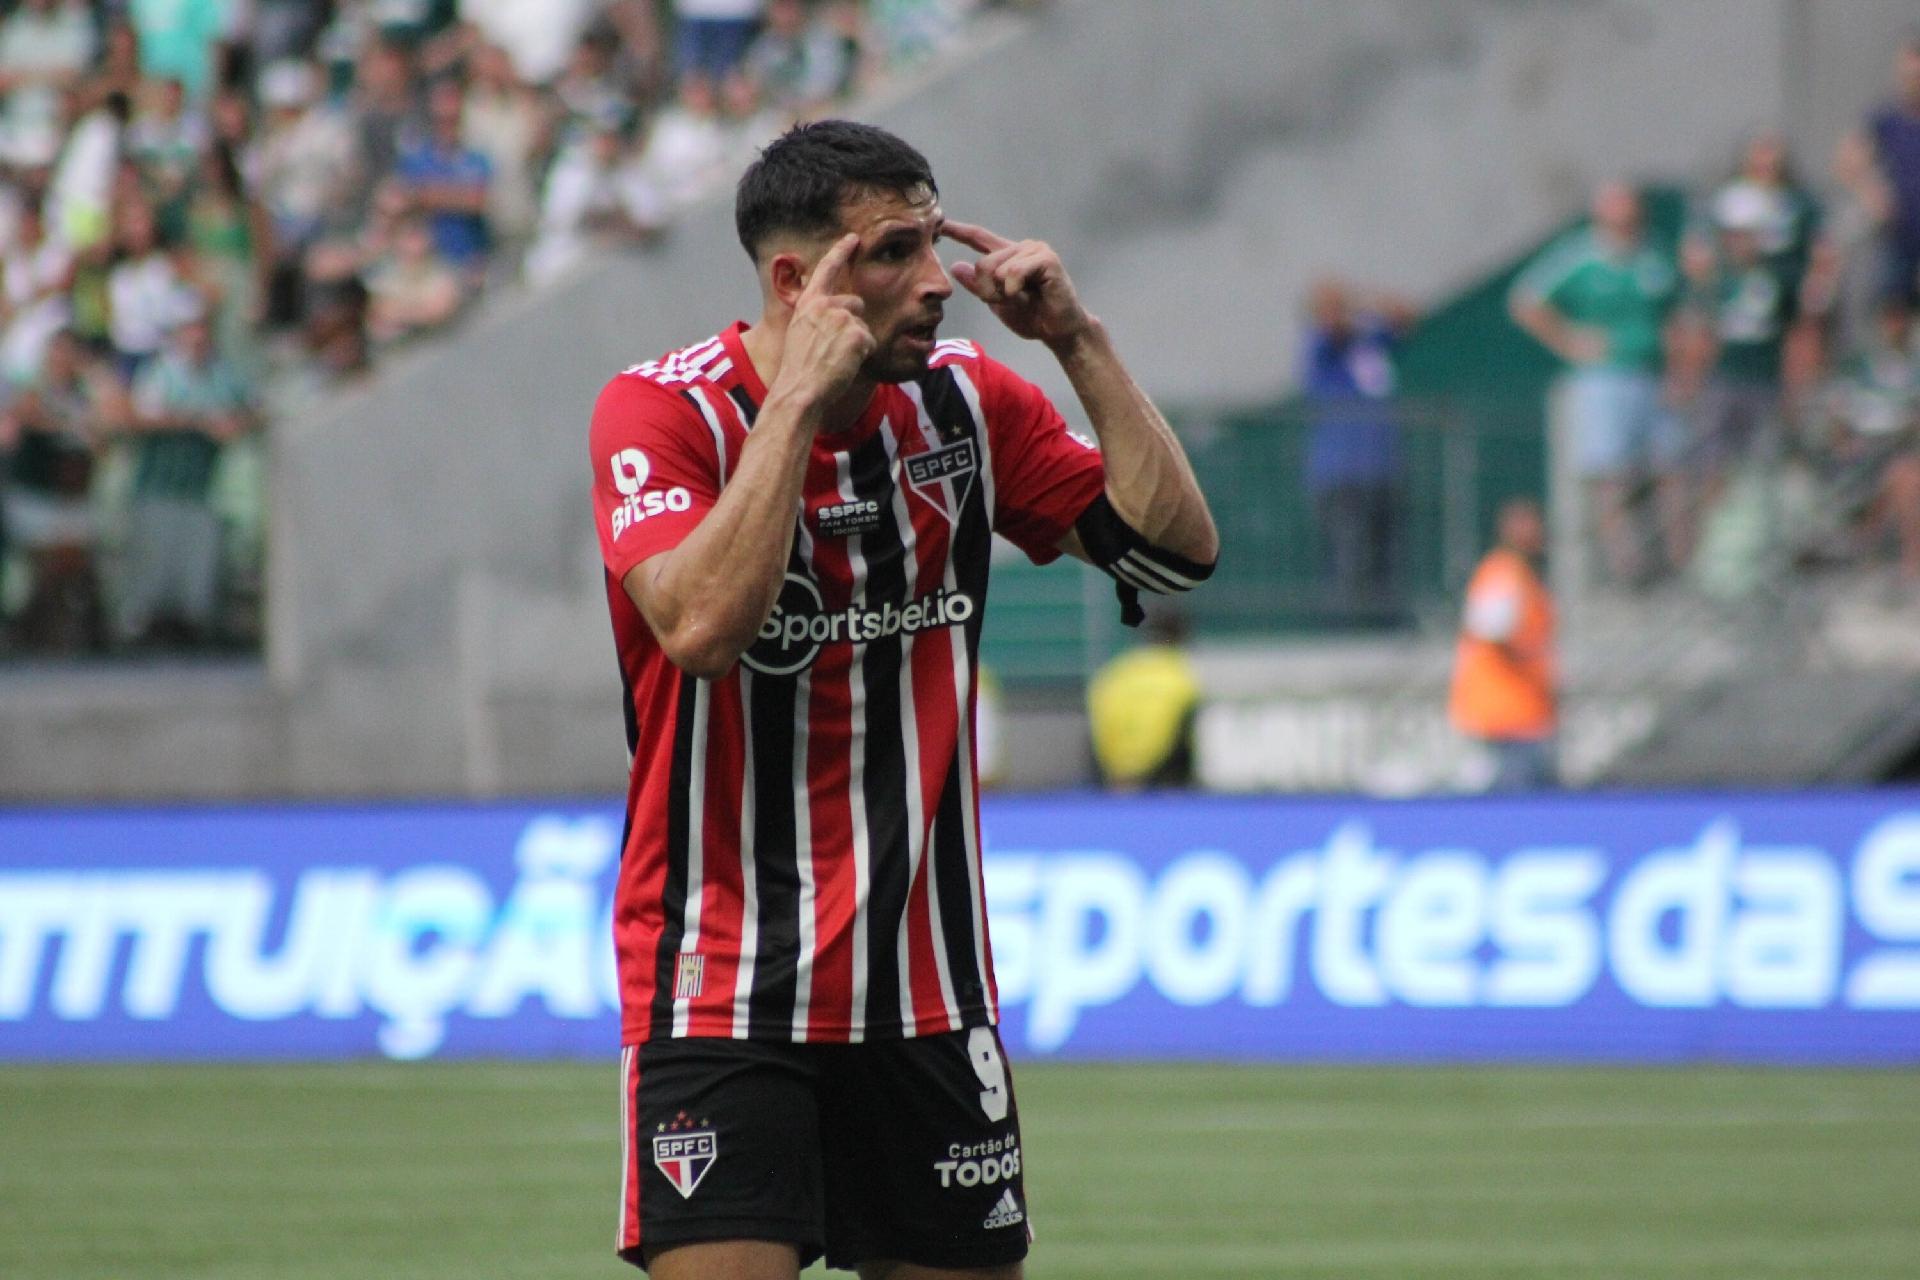 Basquete Tricolor fica com o vice-campeonato paulista - SPFC